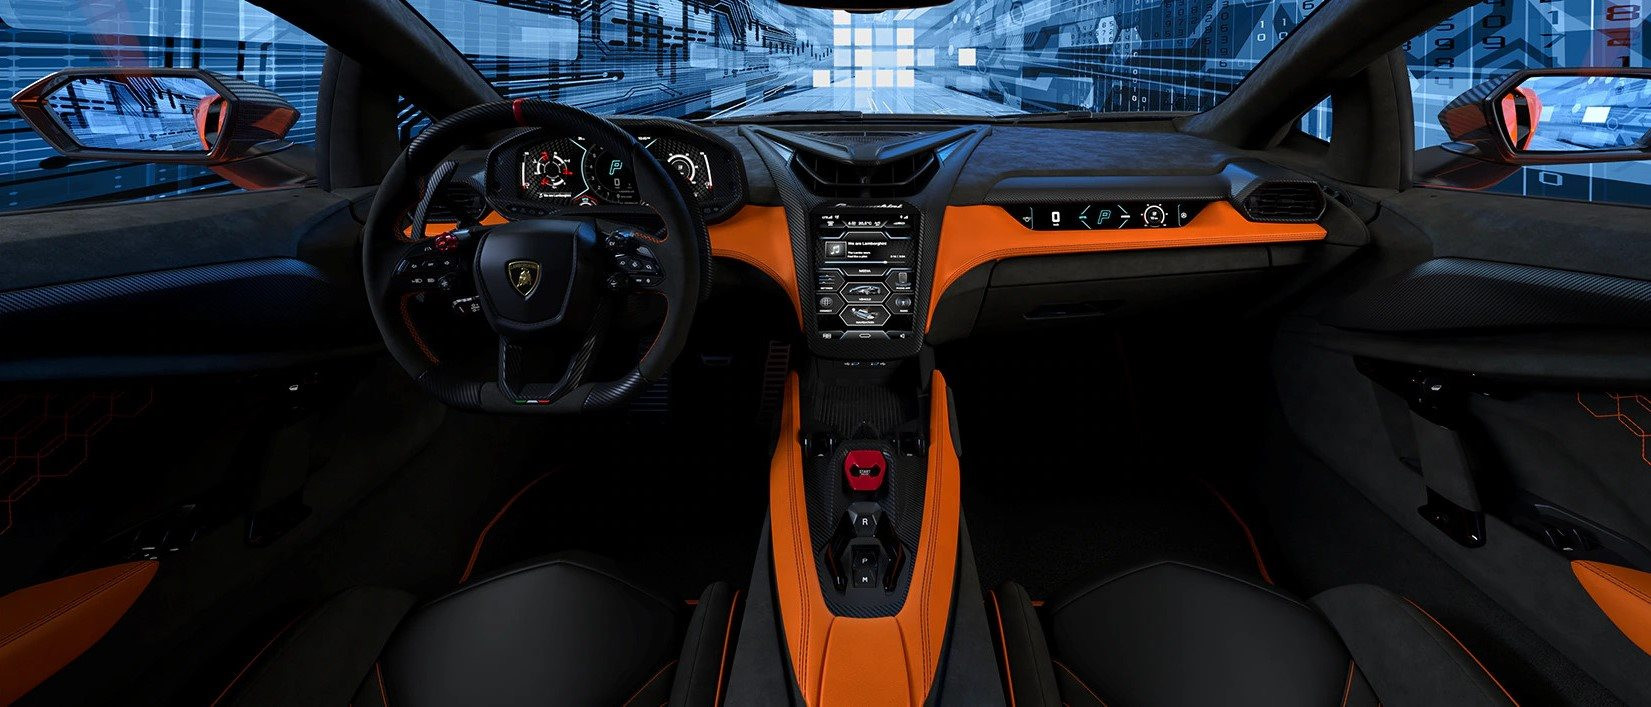 Siêu xe 21 tỷ đồng của Lamborghini có gì hot mà cháy hàng đến hết năm 2025